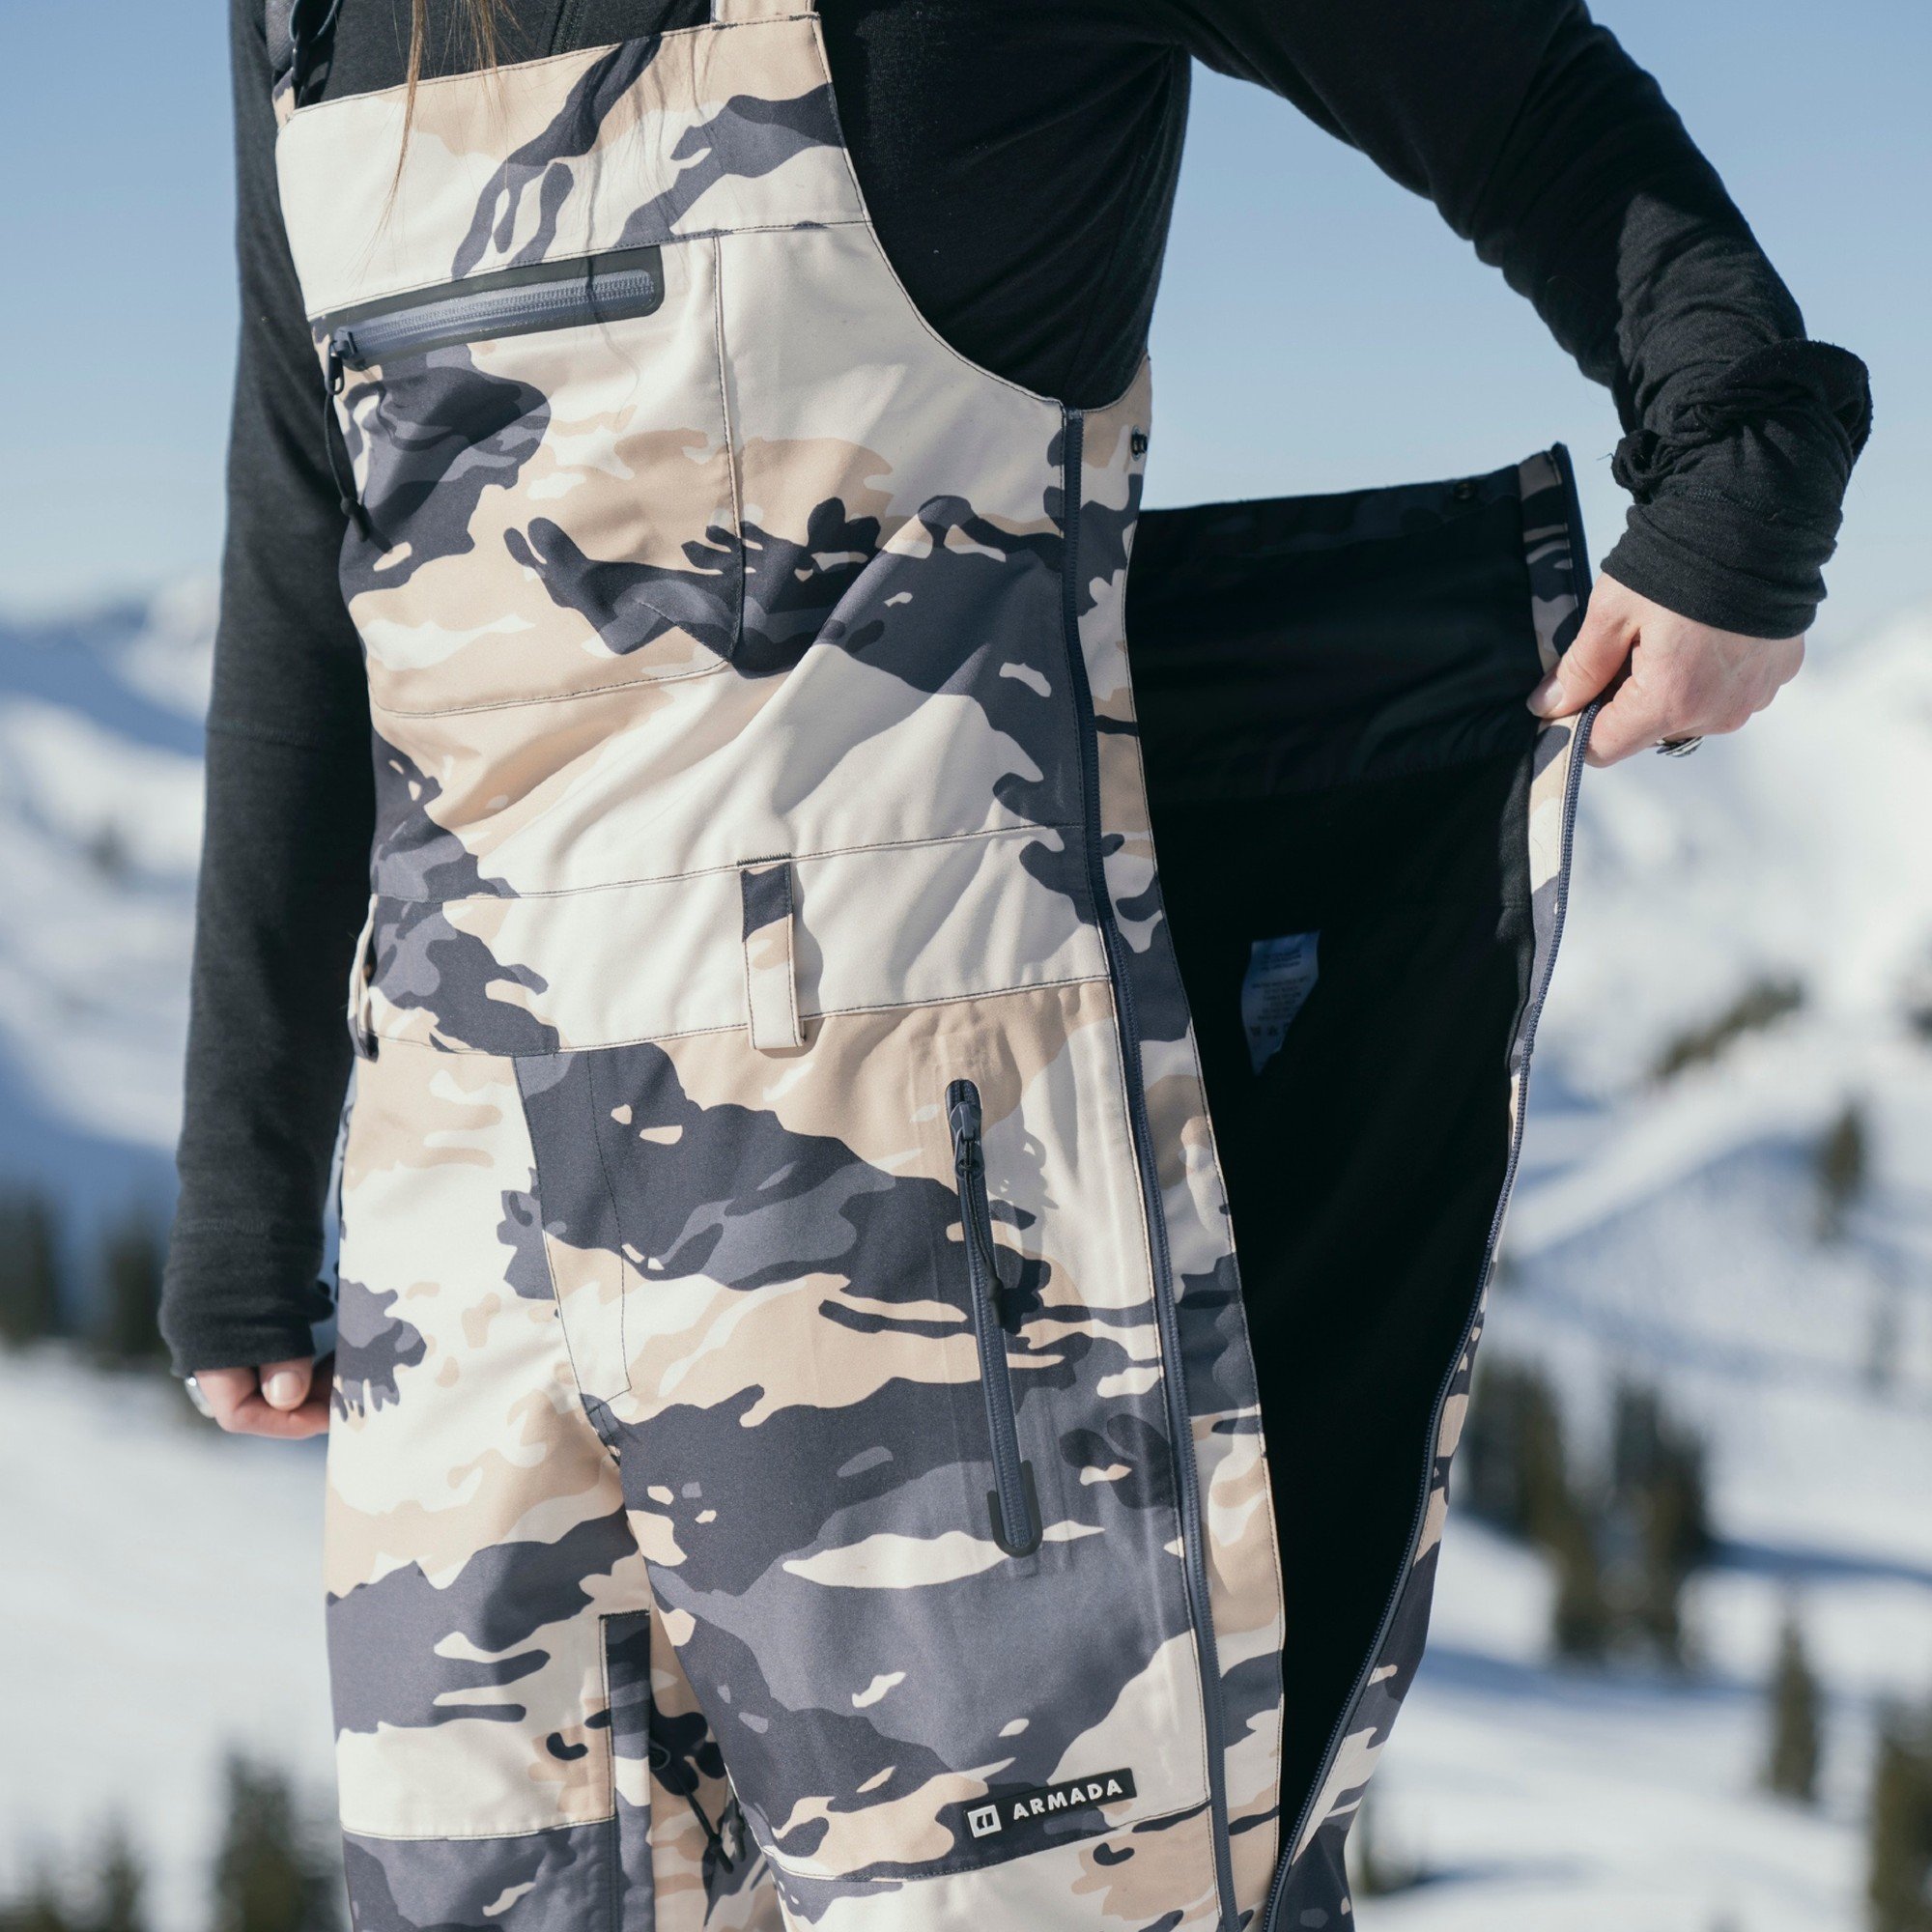 Armada Pascore Women's Ski/Snowboard Bib Pants